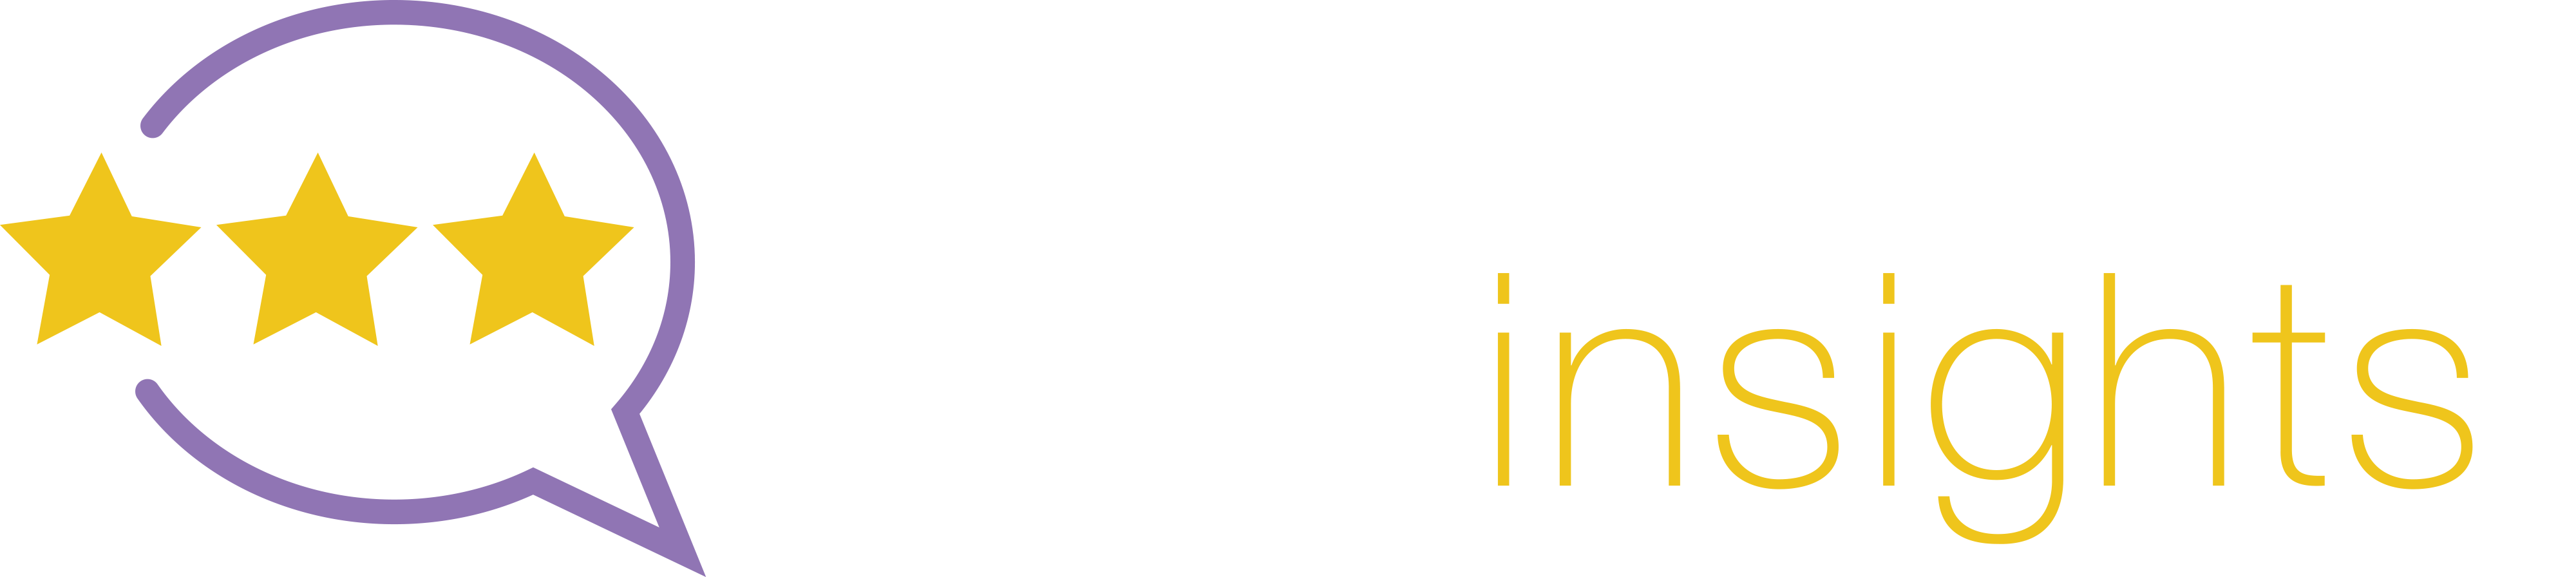 gartner-logo-light